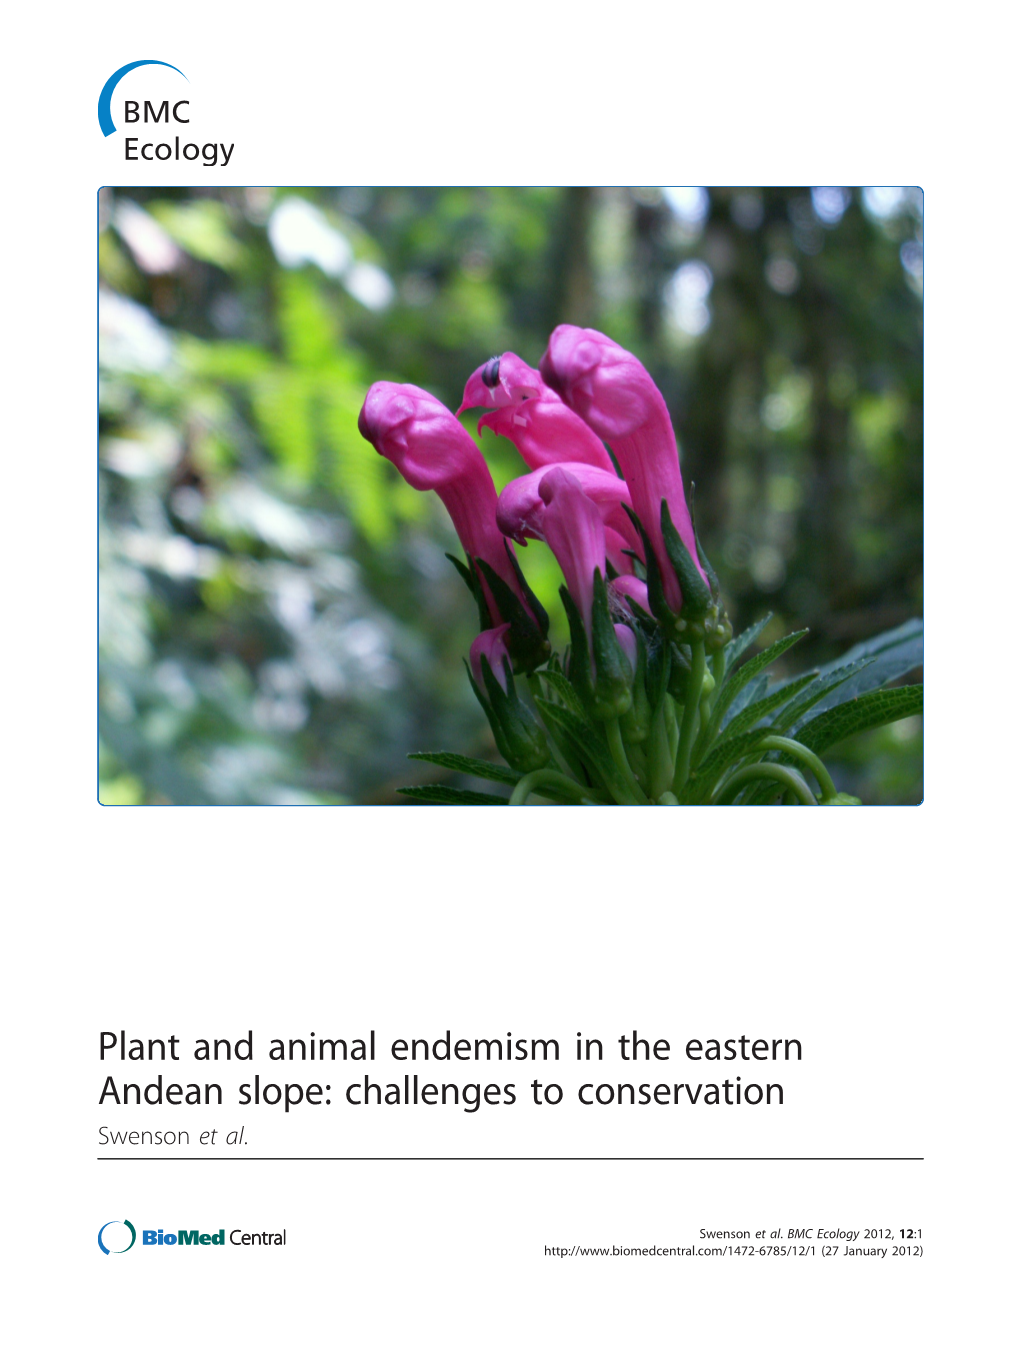 Challenges to Conservation Swenson Et Al